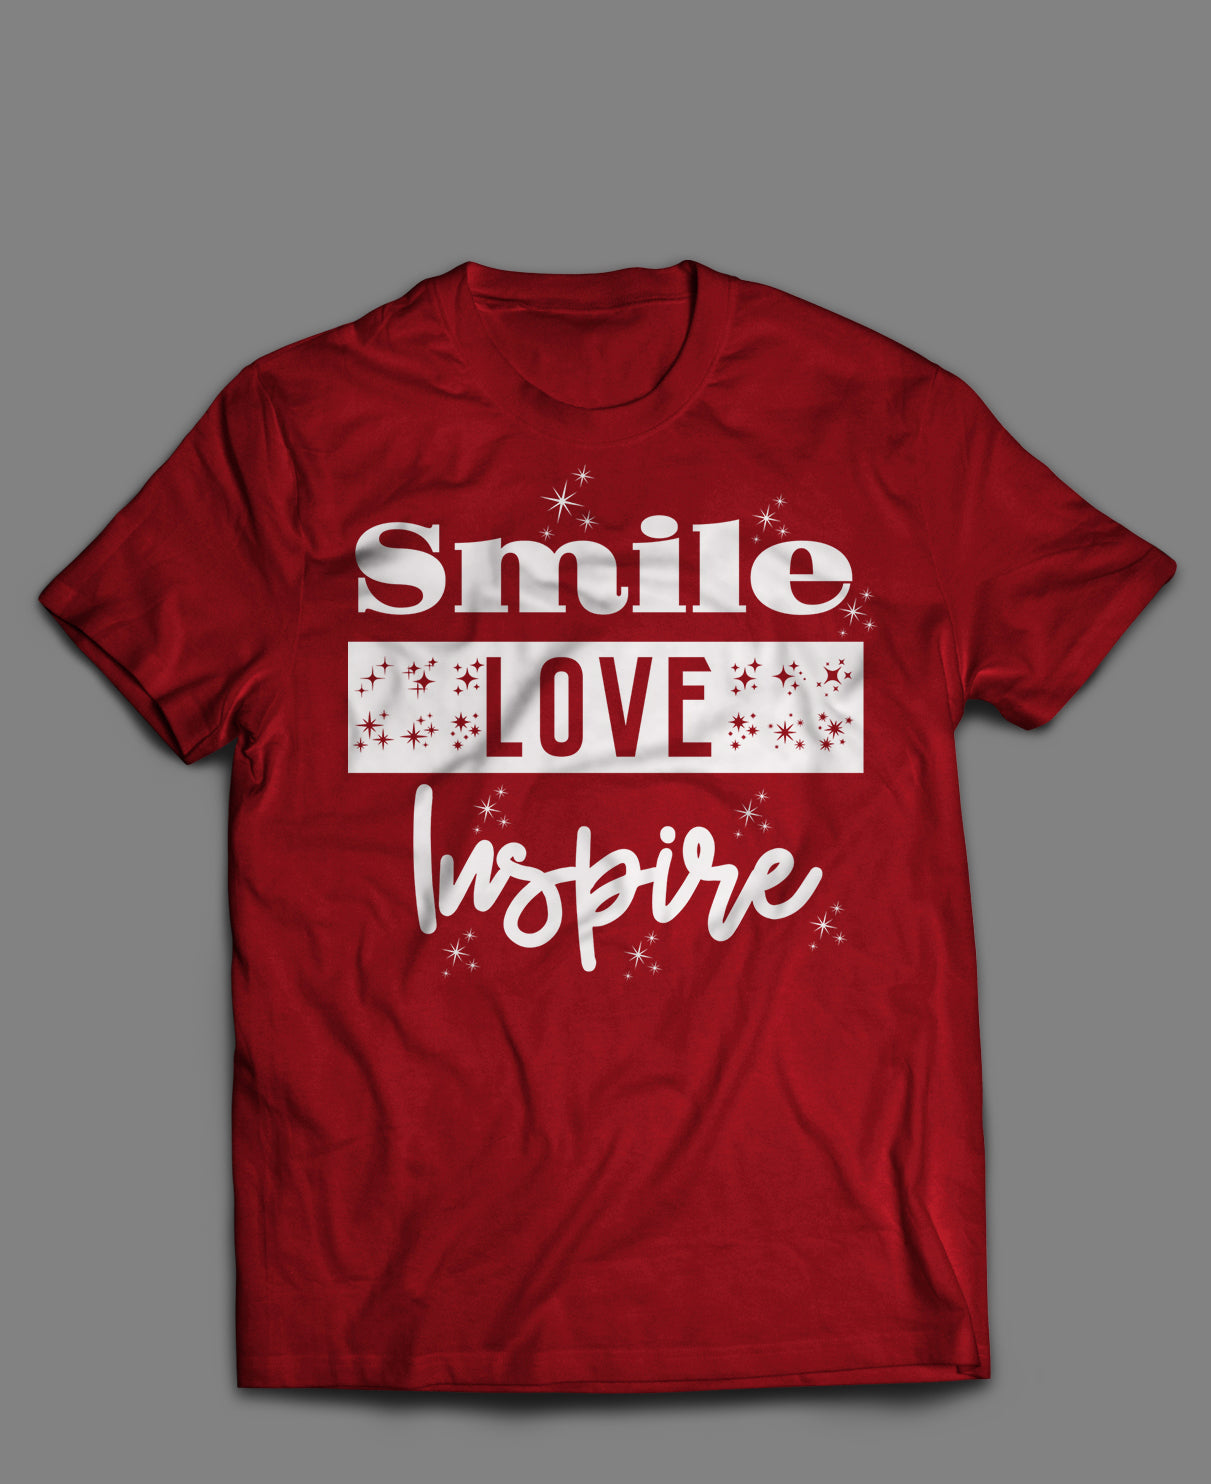 Smile. Love. Inspire - Red Short Sleeve